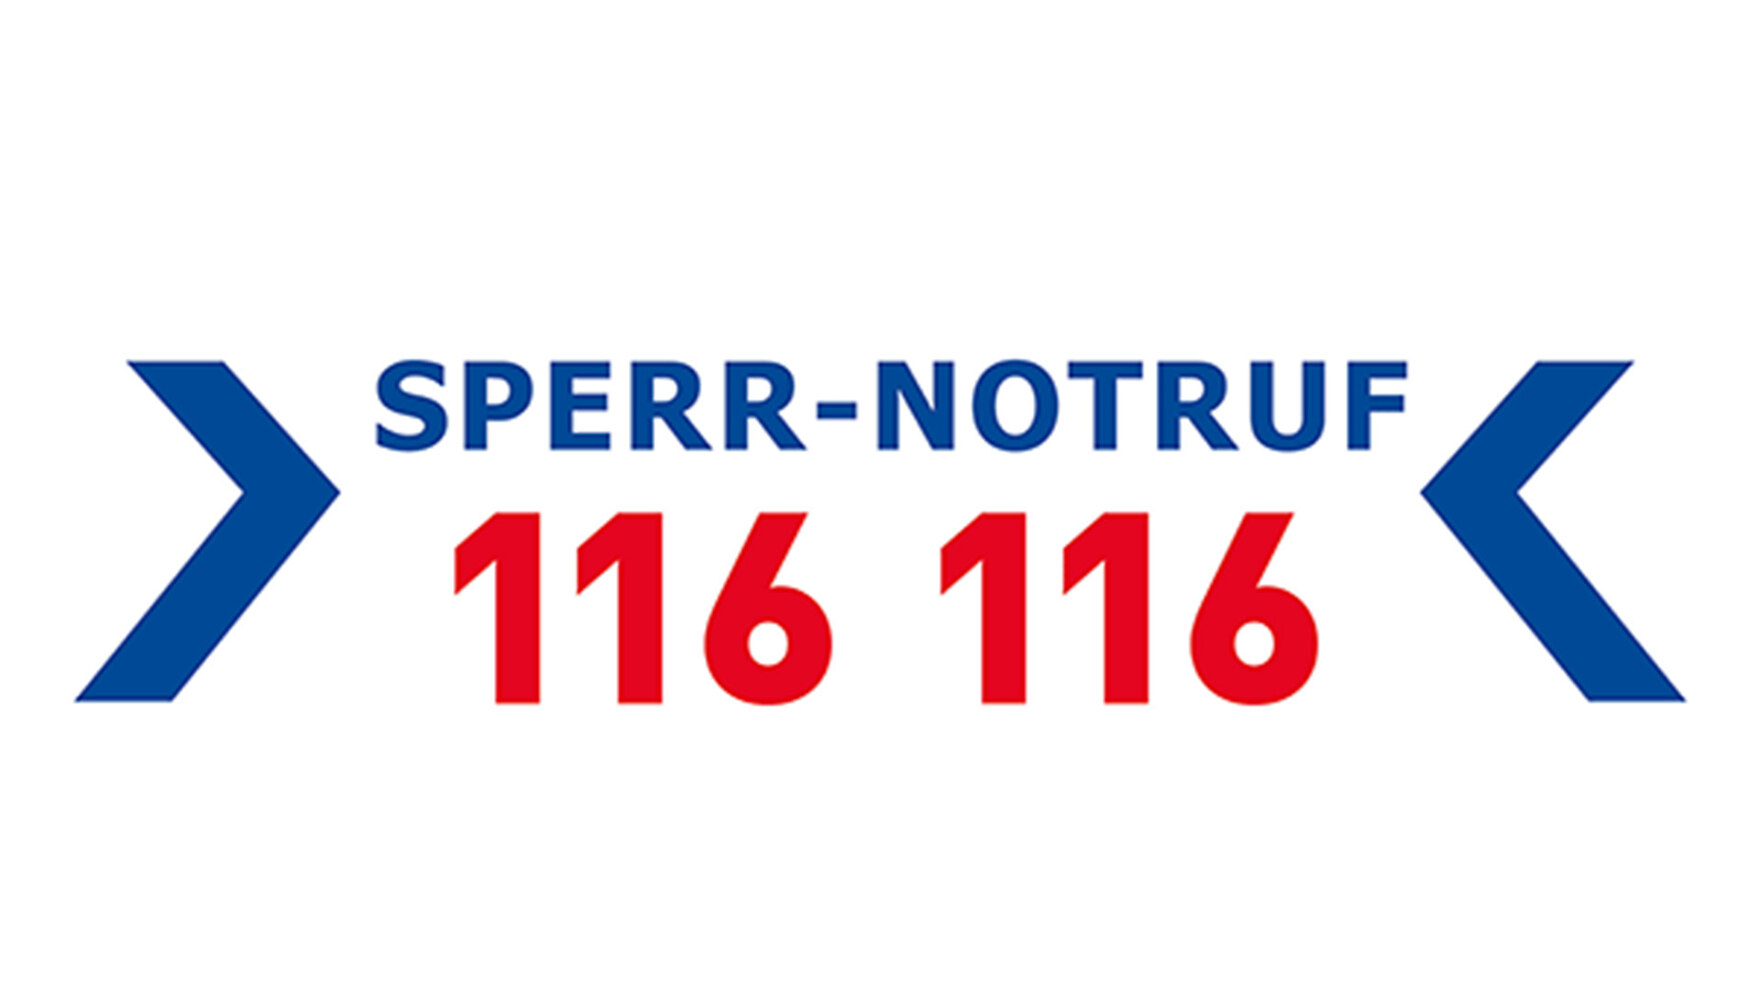 Die Grafik zeigt ein Logo: »SPERR-NOTRUF« in blauen Großbuchstaben, darunter in rot »116 116«.